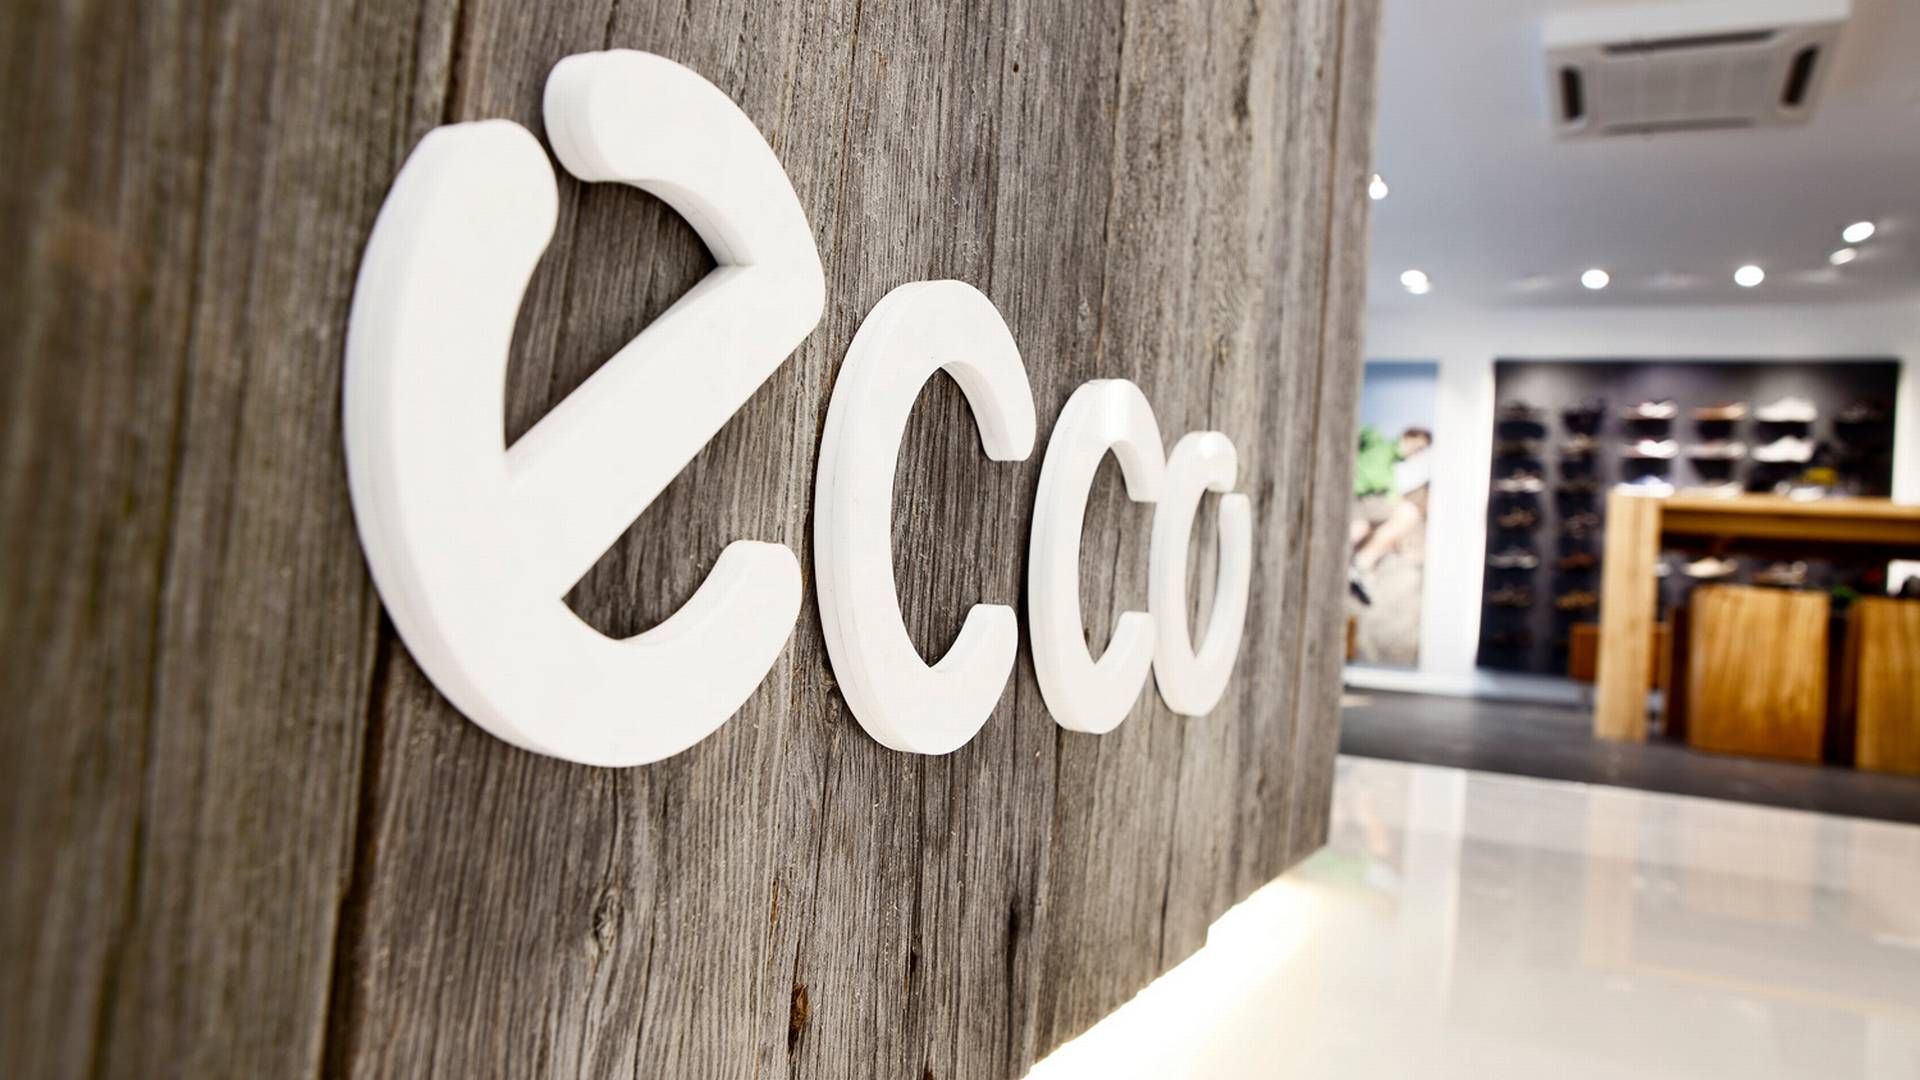 Ecco har salg i omkring 90 lande og har selv over 2.100 butikker globalt. | Foto: Pr / Ecco